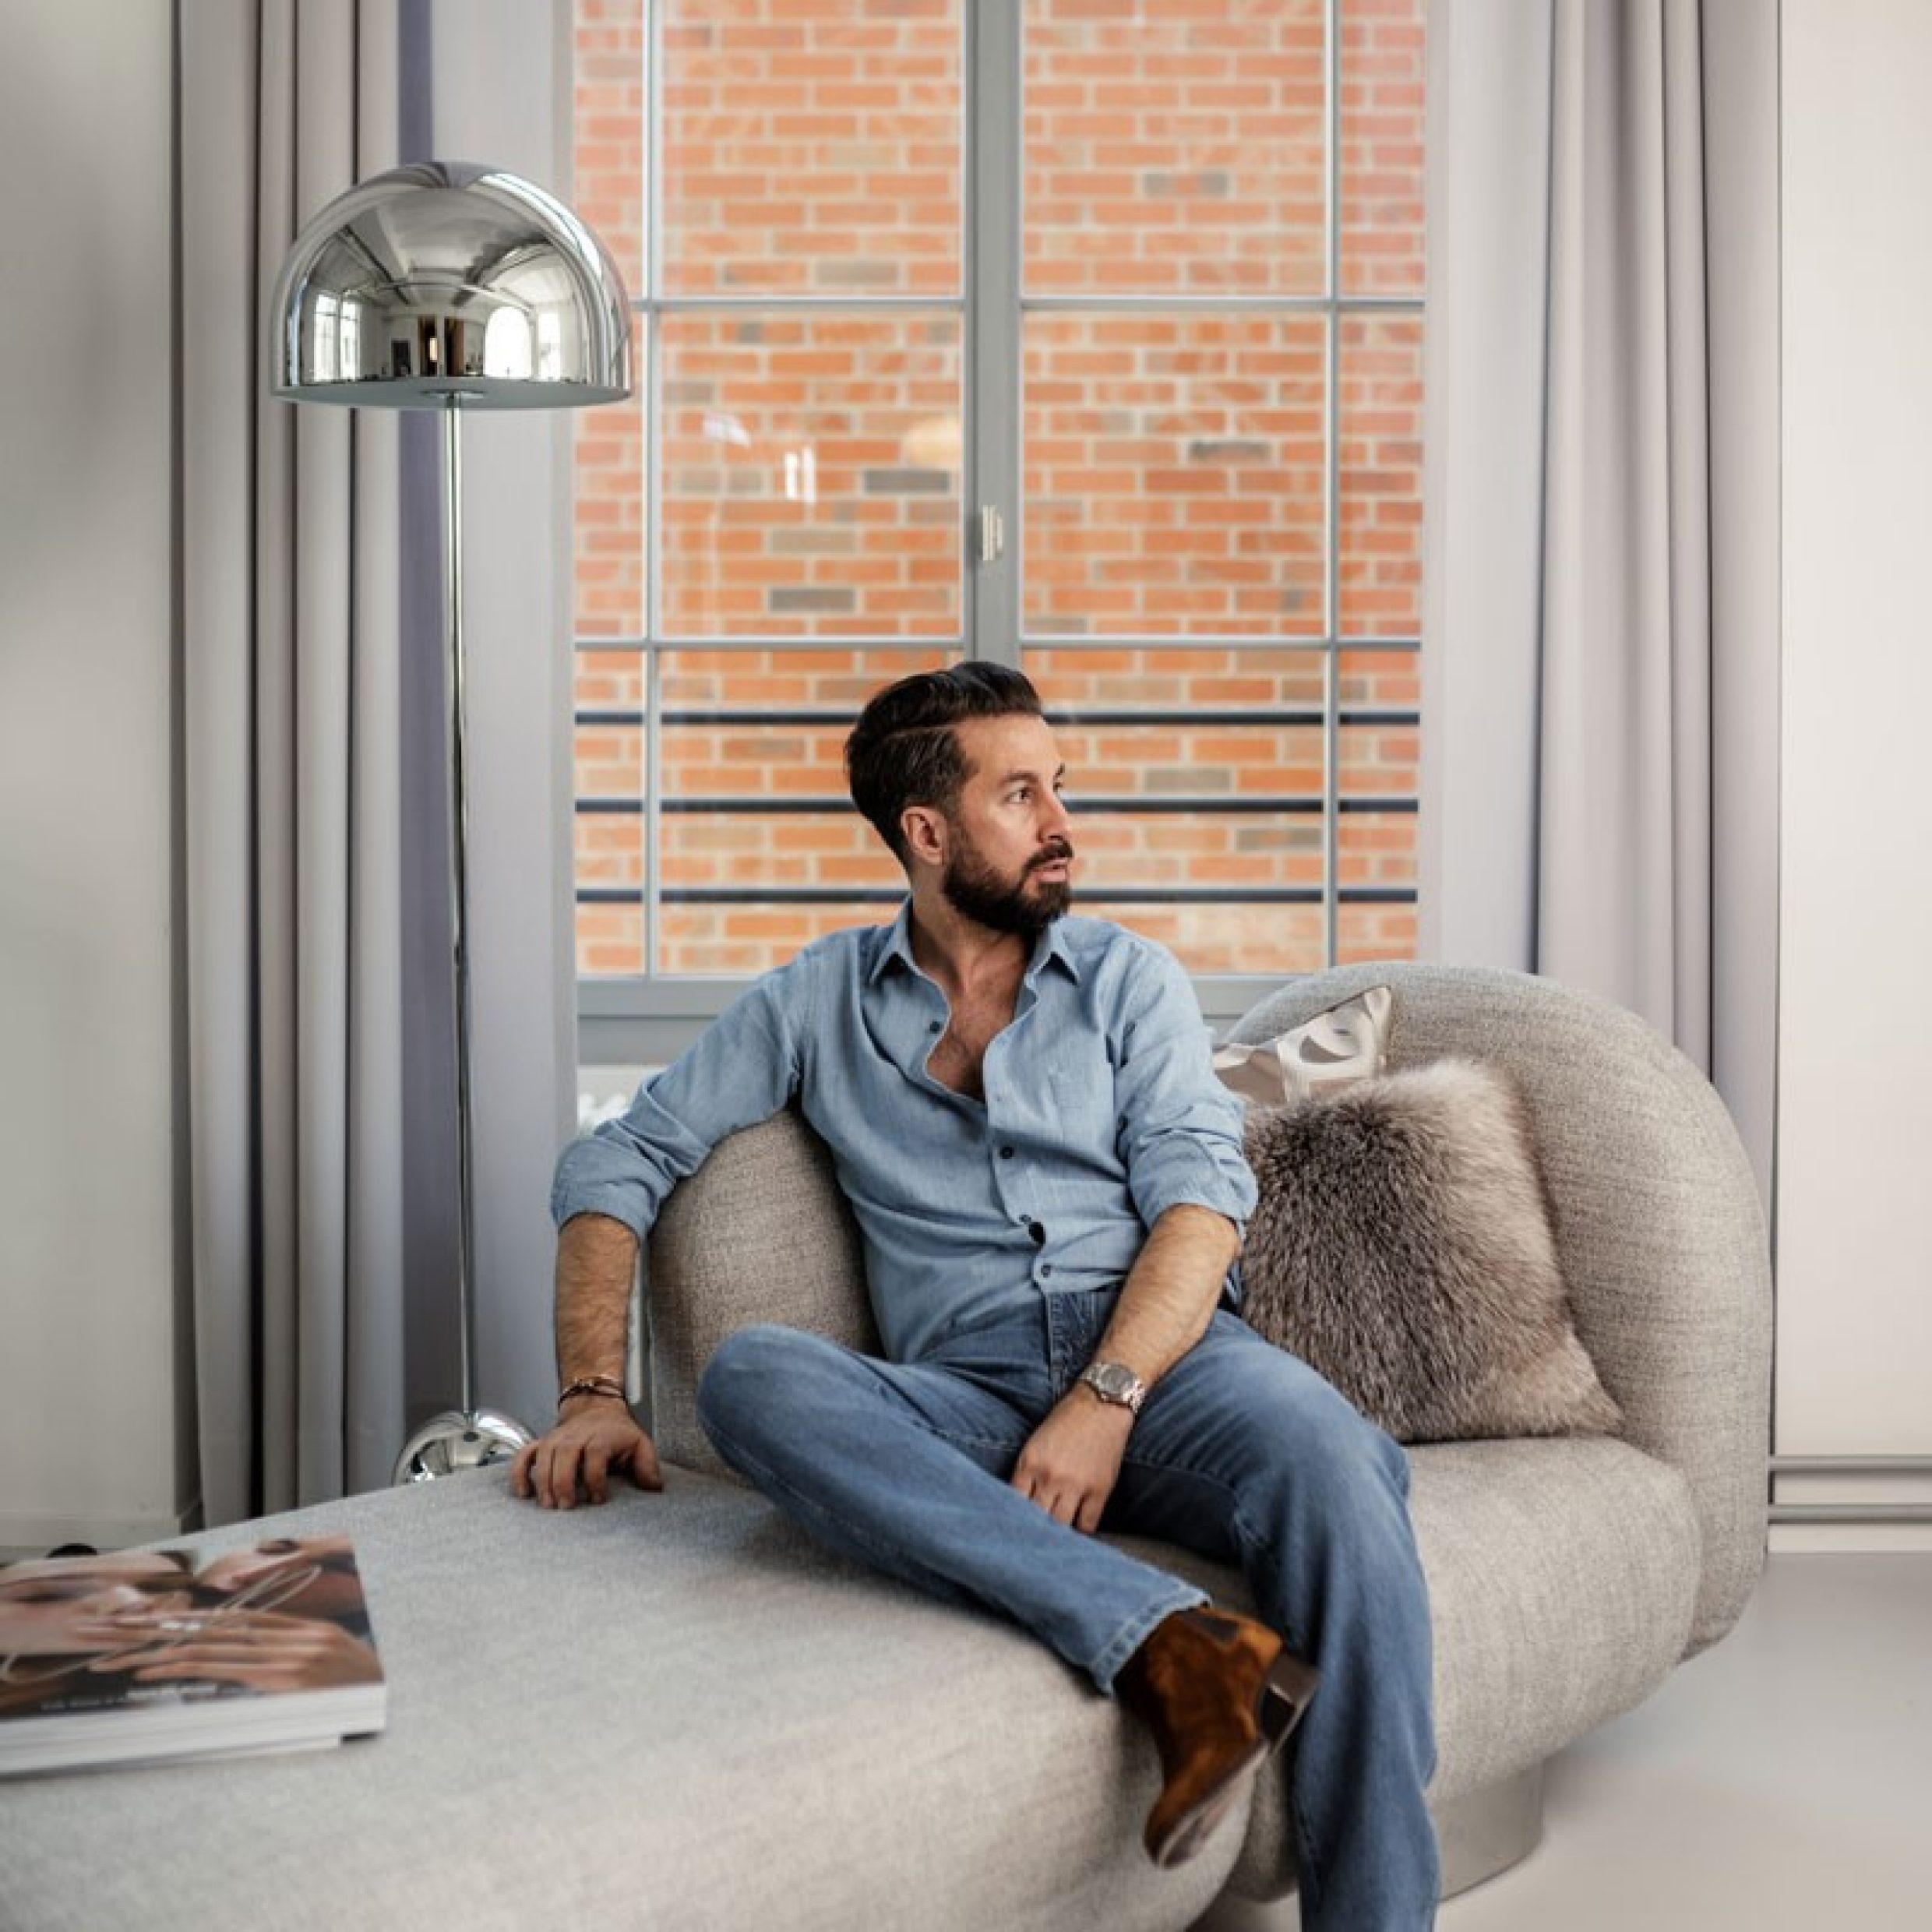 Un uomo dai capelli scuri con camicia in jeans, jeans e stivali in camoscio è seduto su un divano beige e guarda in modo riflessivo di lato. La stanza è arredata con stile, con elementi che si combinano perfettamente.